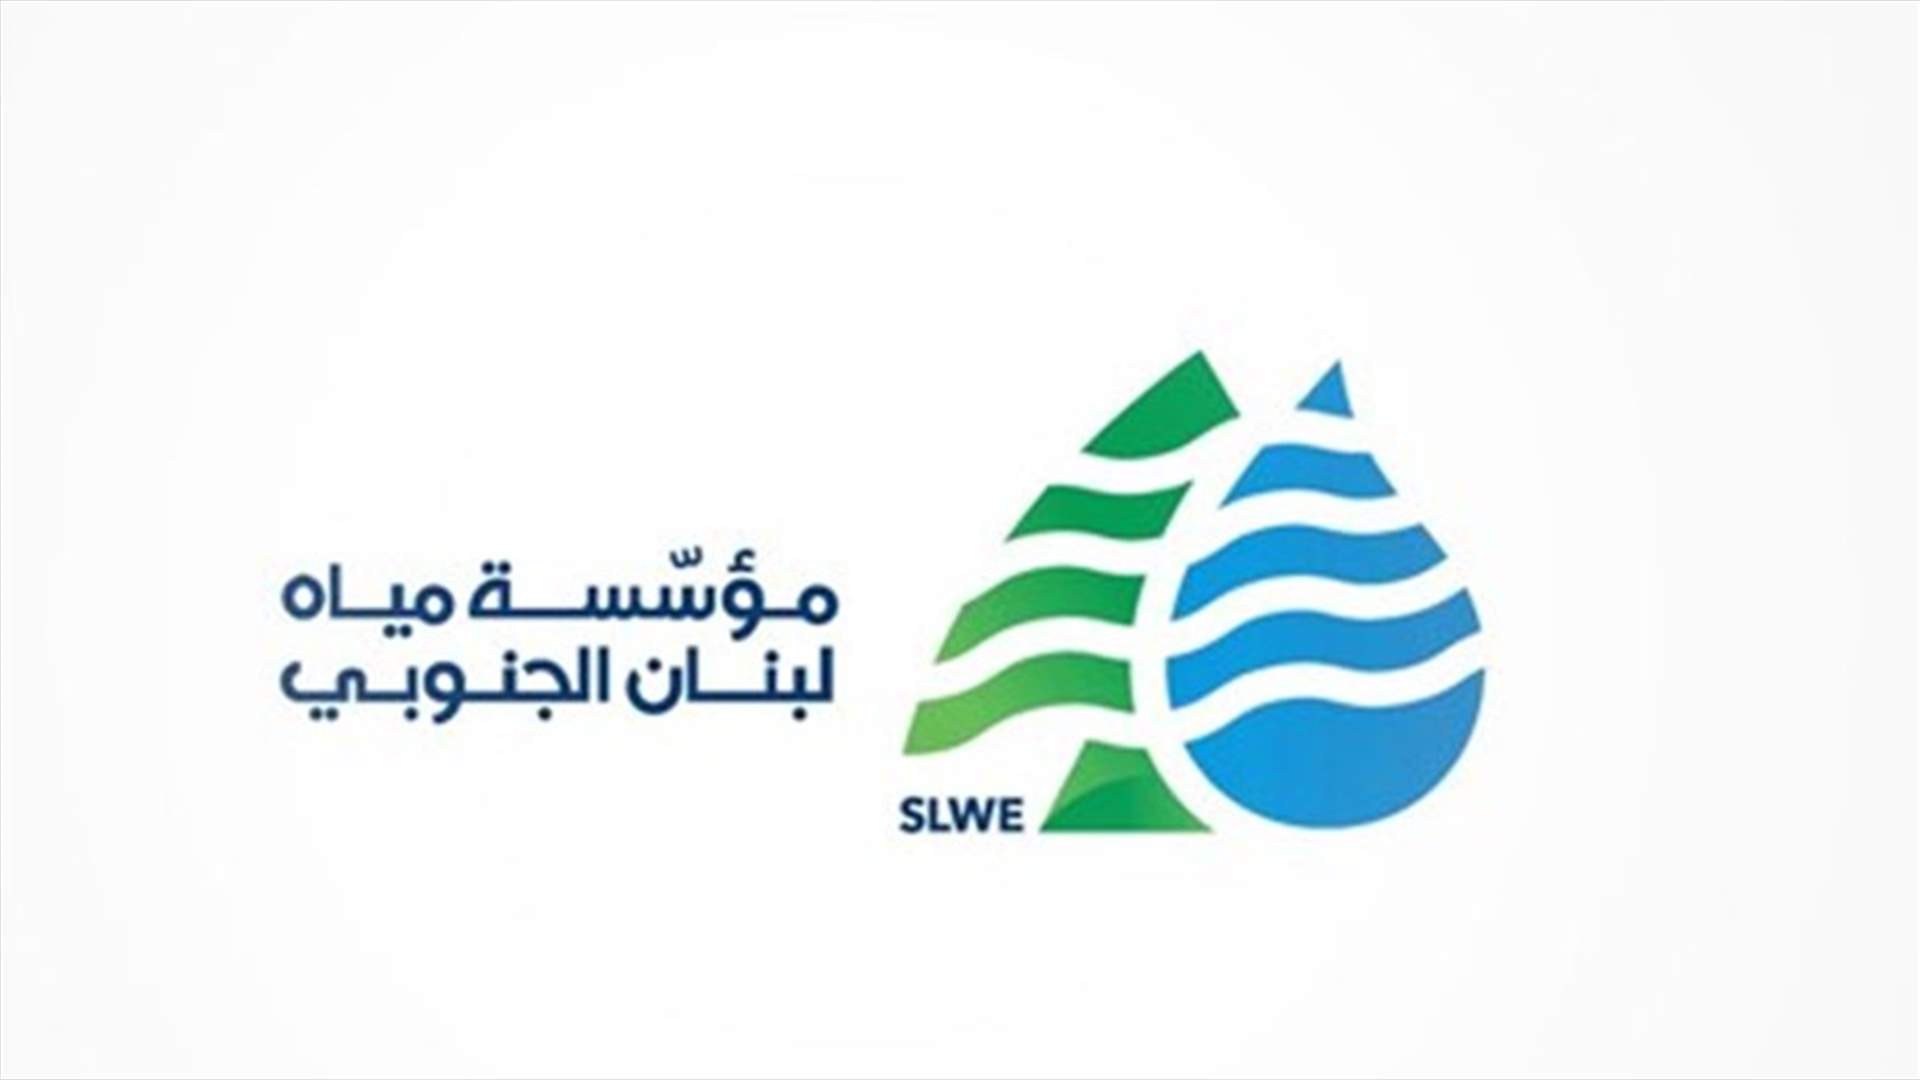 مؤسسة مياه لبنان الجنوبي: لترشيد الاستهلاك خلال الفترة المقبلة